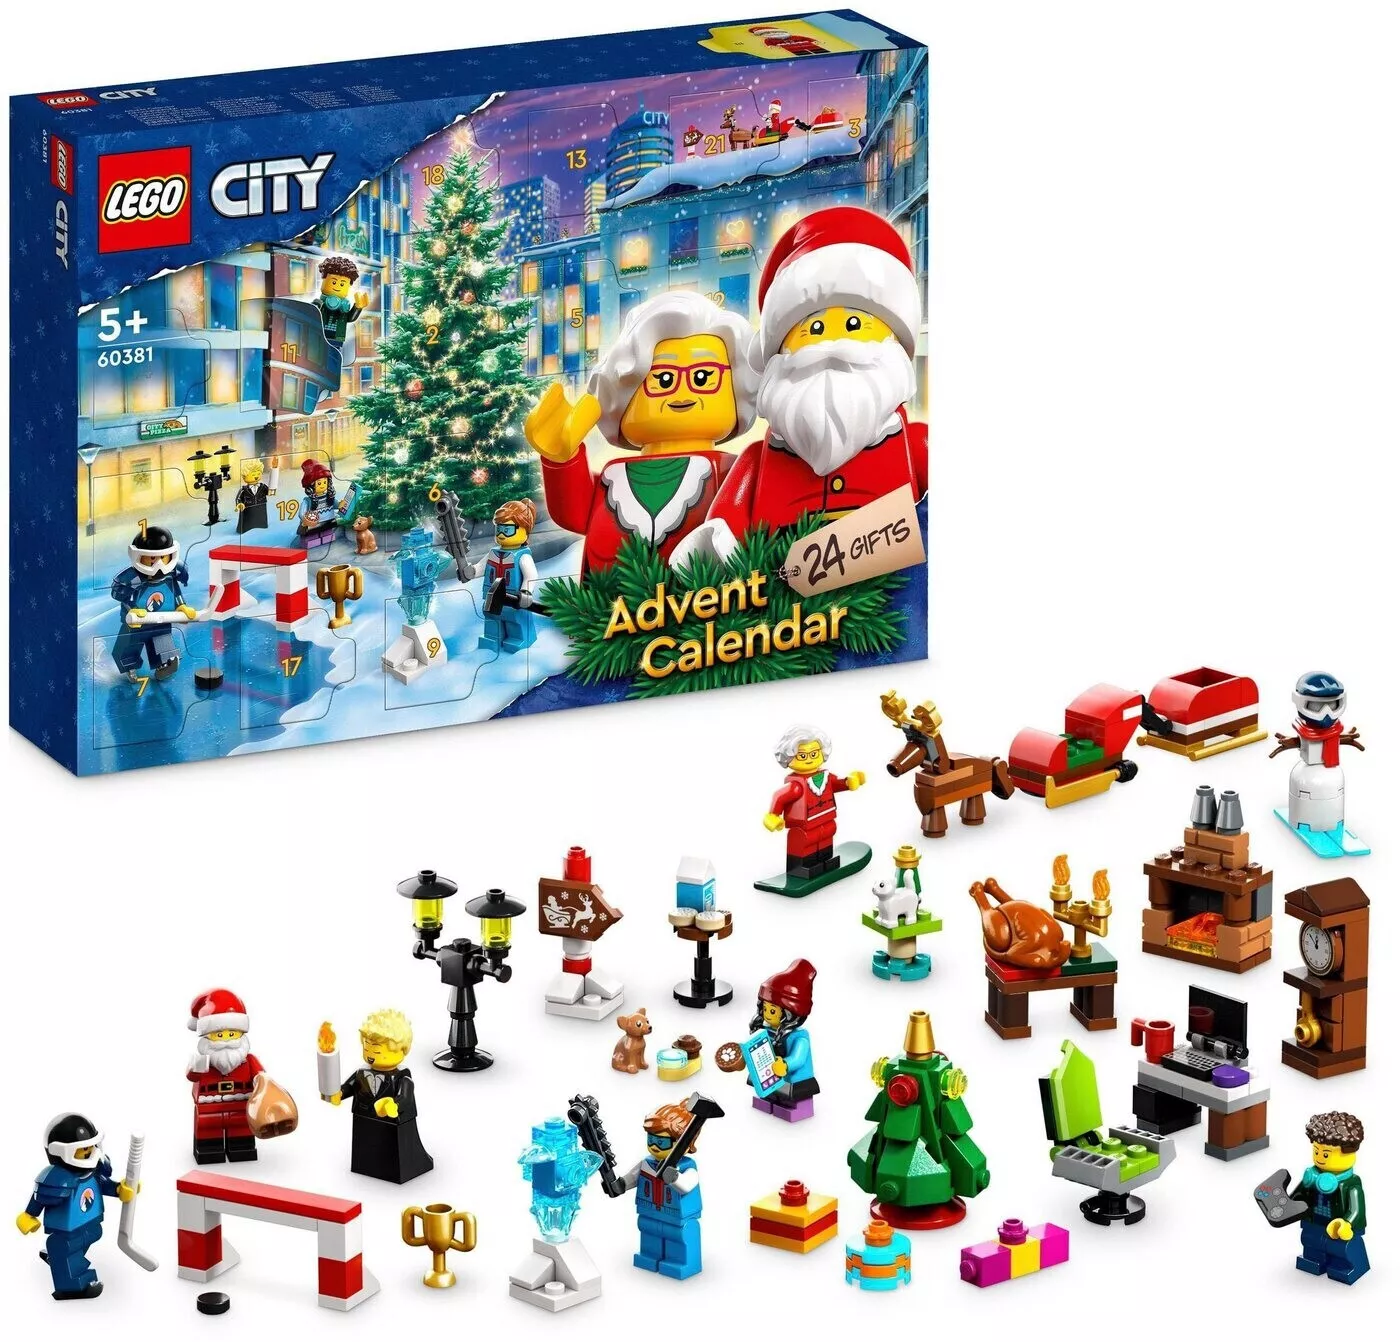 LEGO 60381 City Adventskalender 